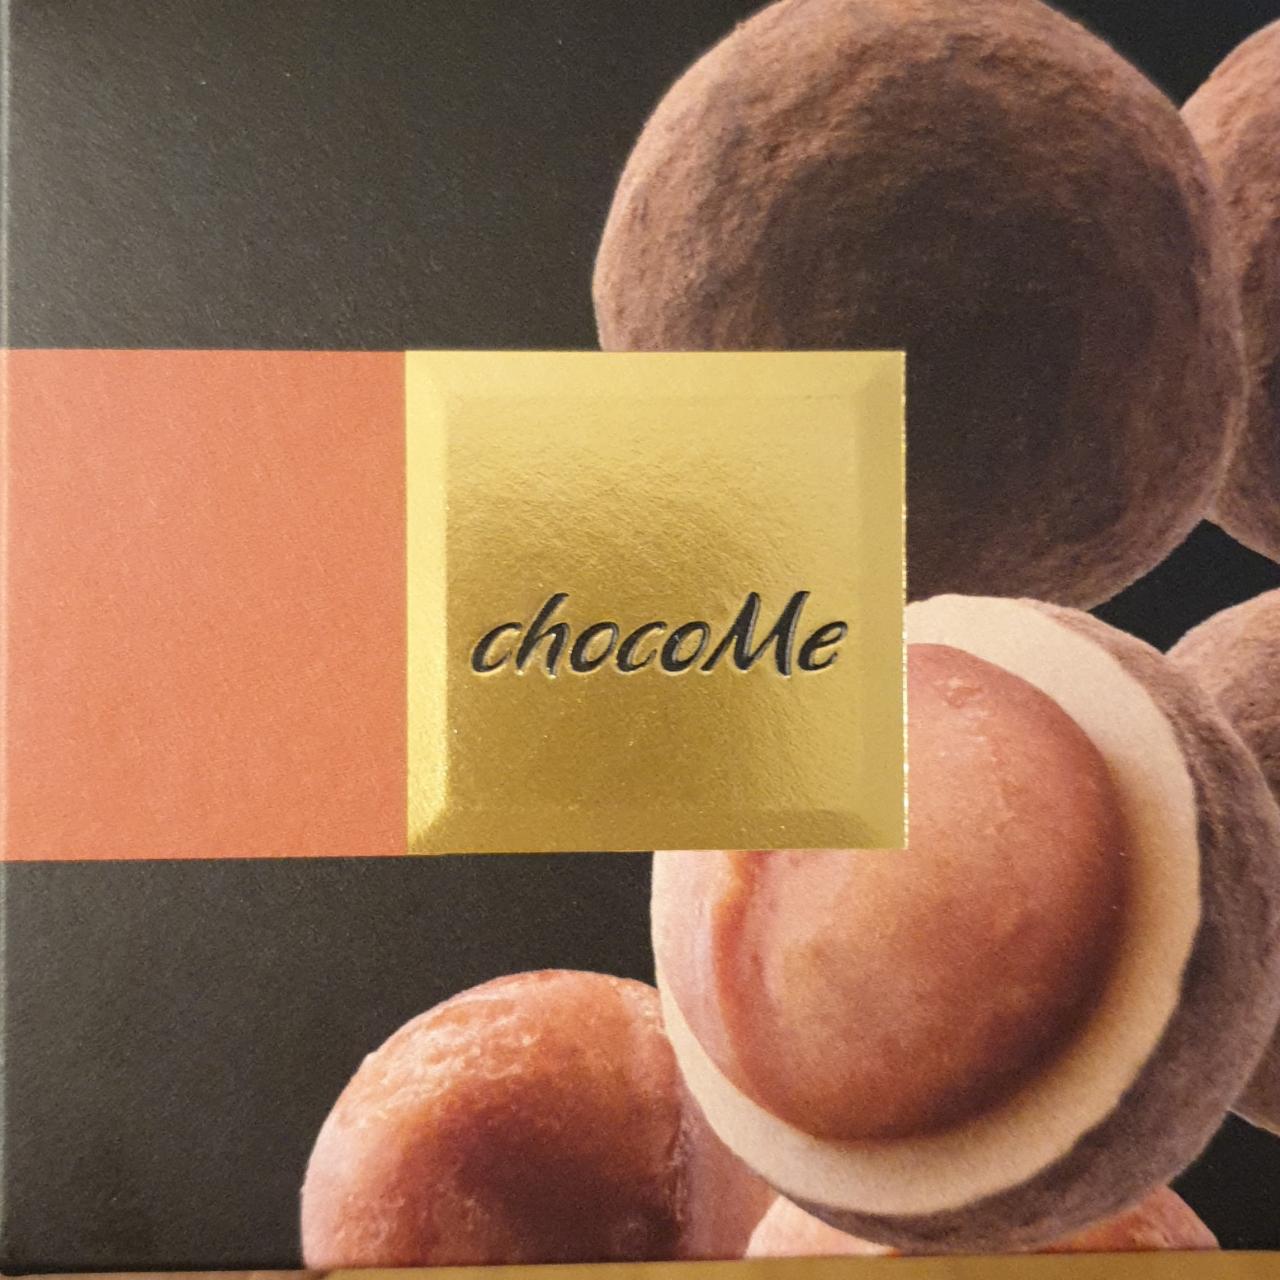 Fotografie - Raffinée Kantonské makadamové ořechy v blond čokoládě a bobech tonka chocoMe